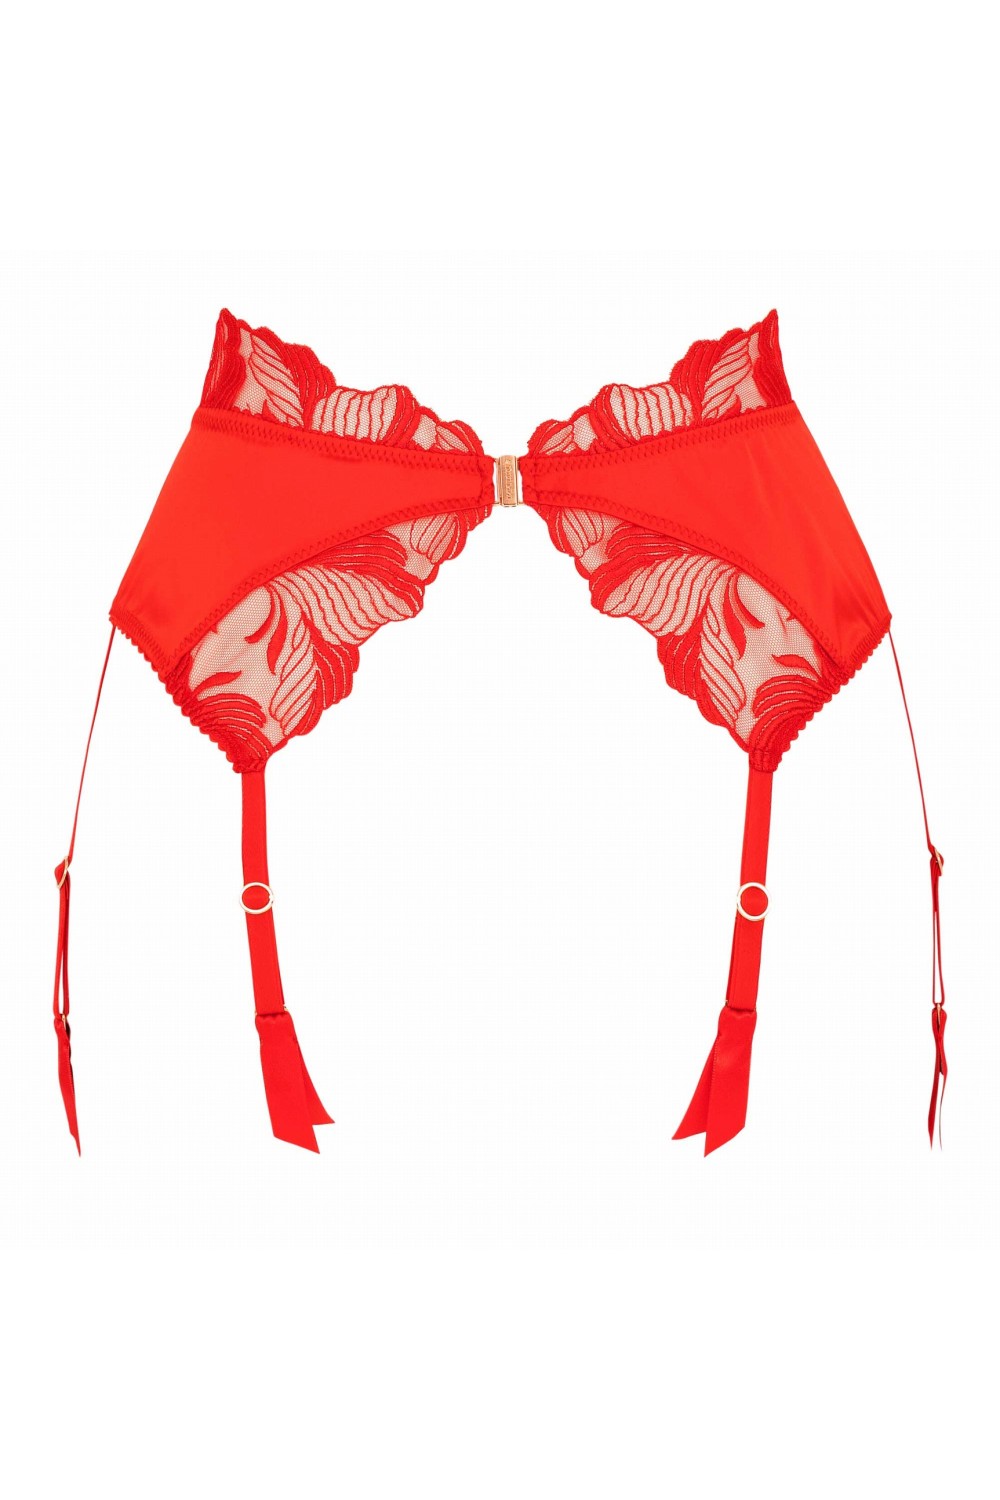 Libertine Suspender - Luxury lingerie – Impudique